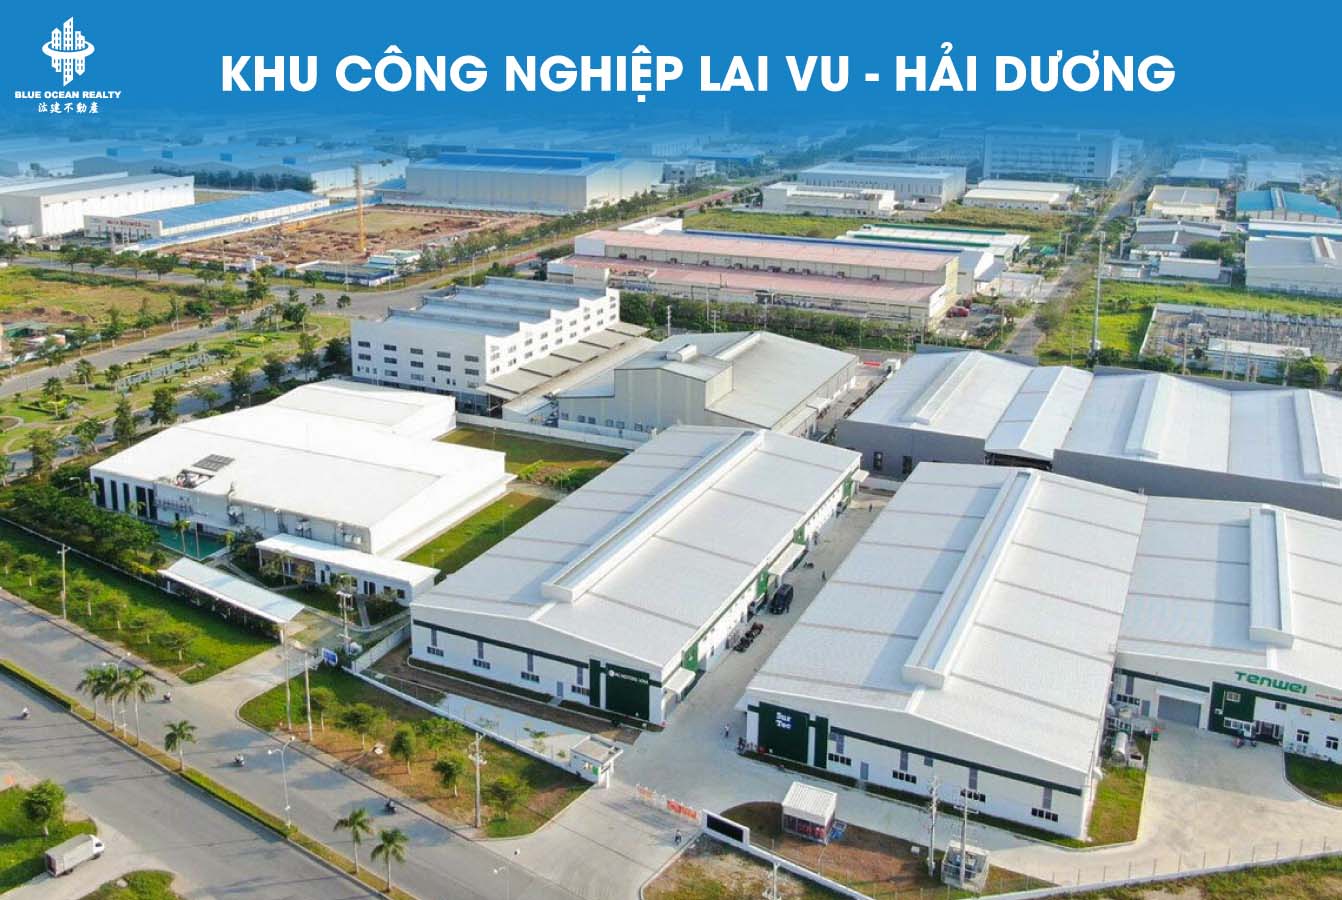 Khu công nghiệp Lai Vu tỉnh Hải Dương - Bất động sản Blue Ocean Realty